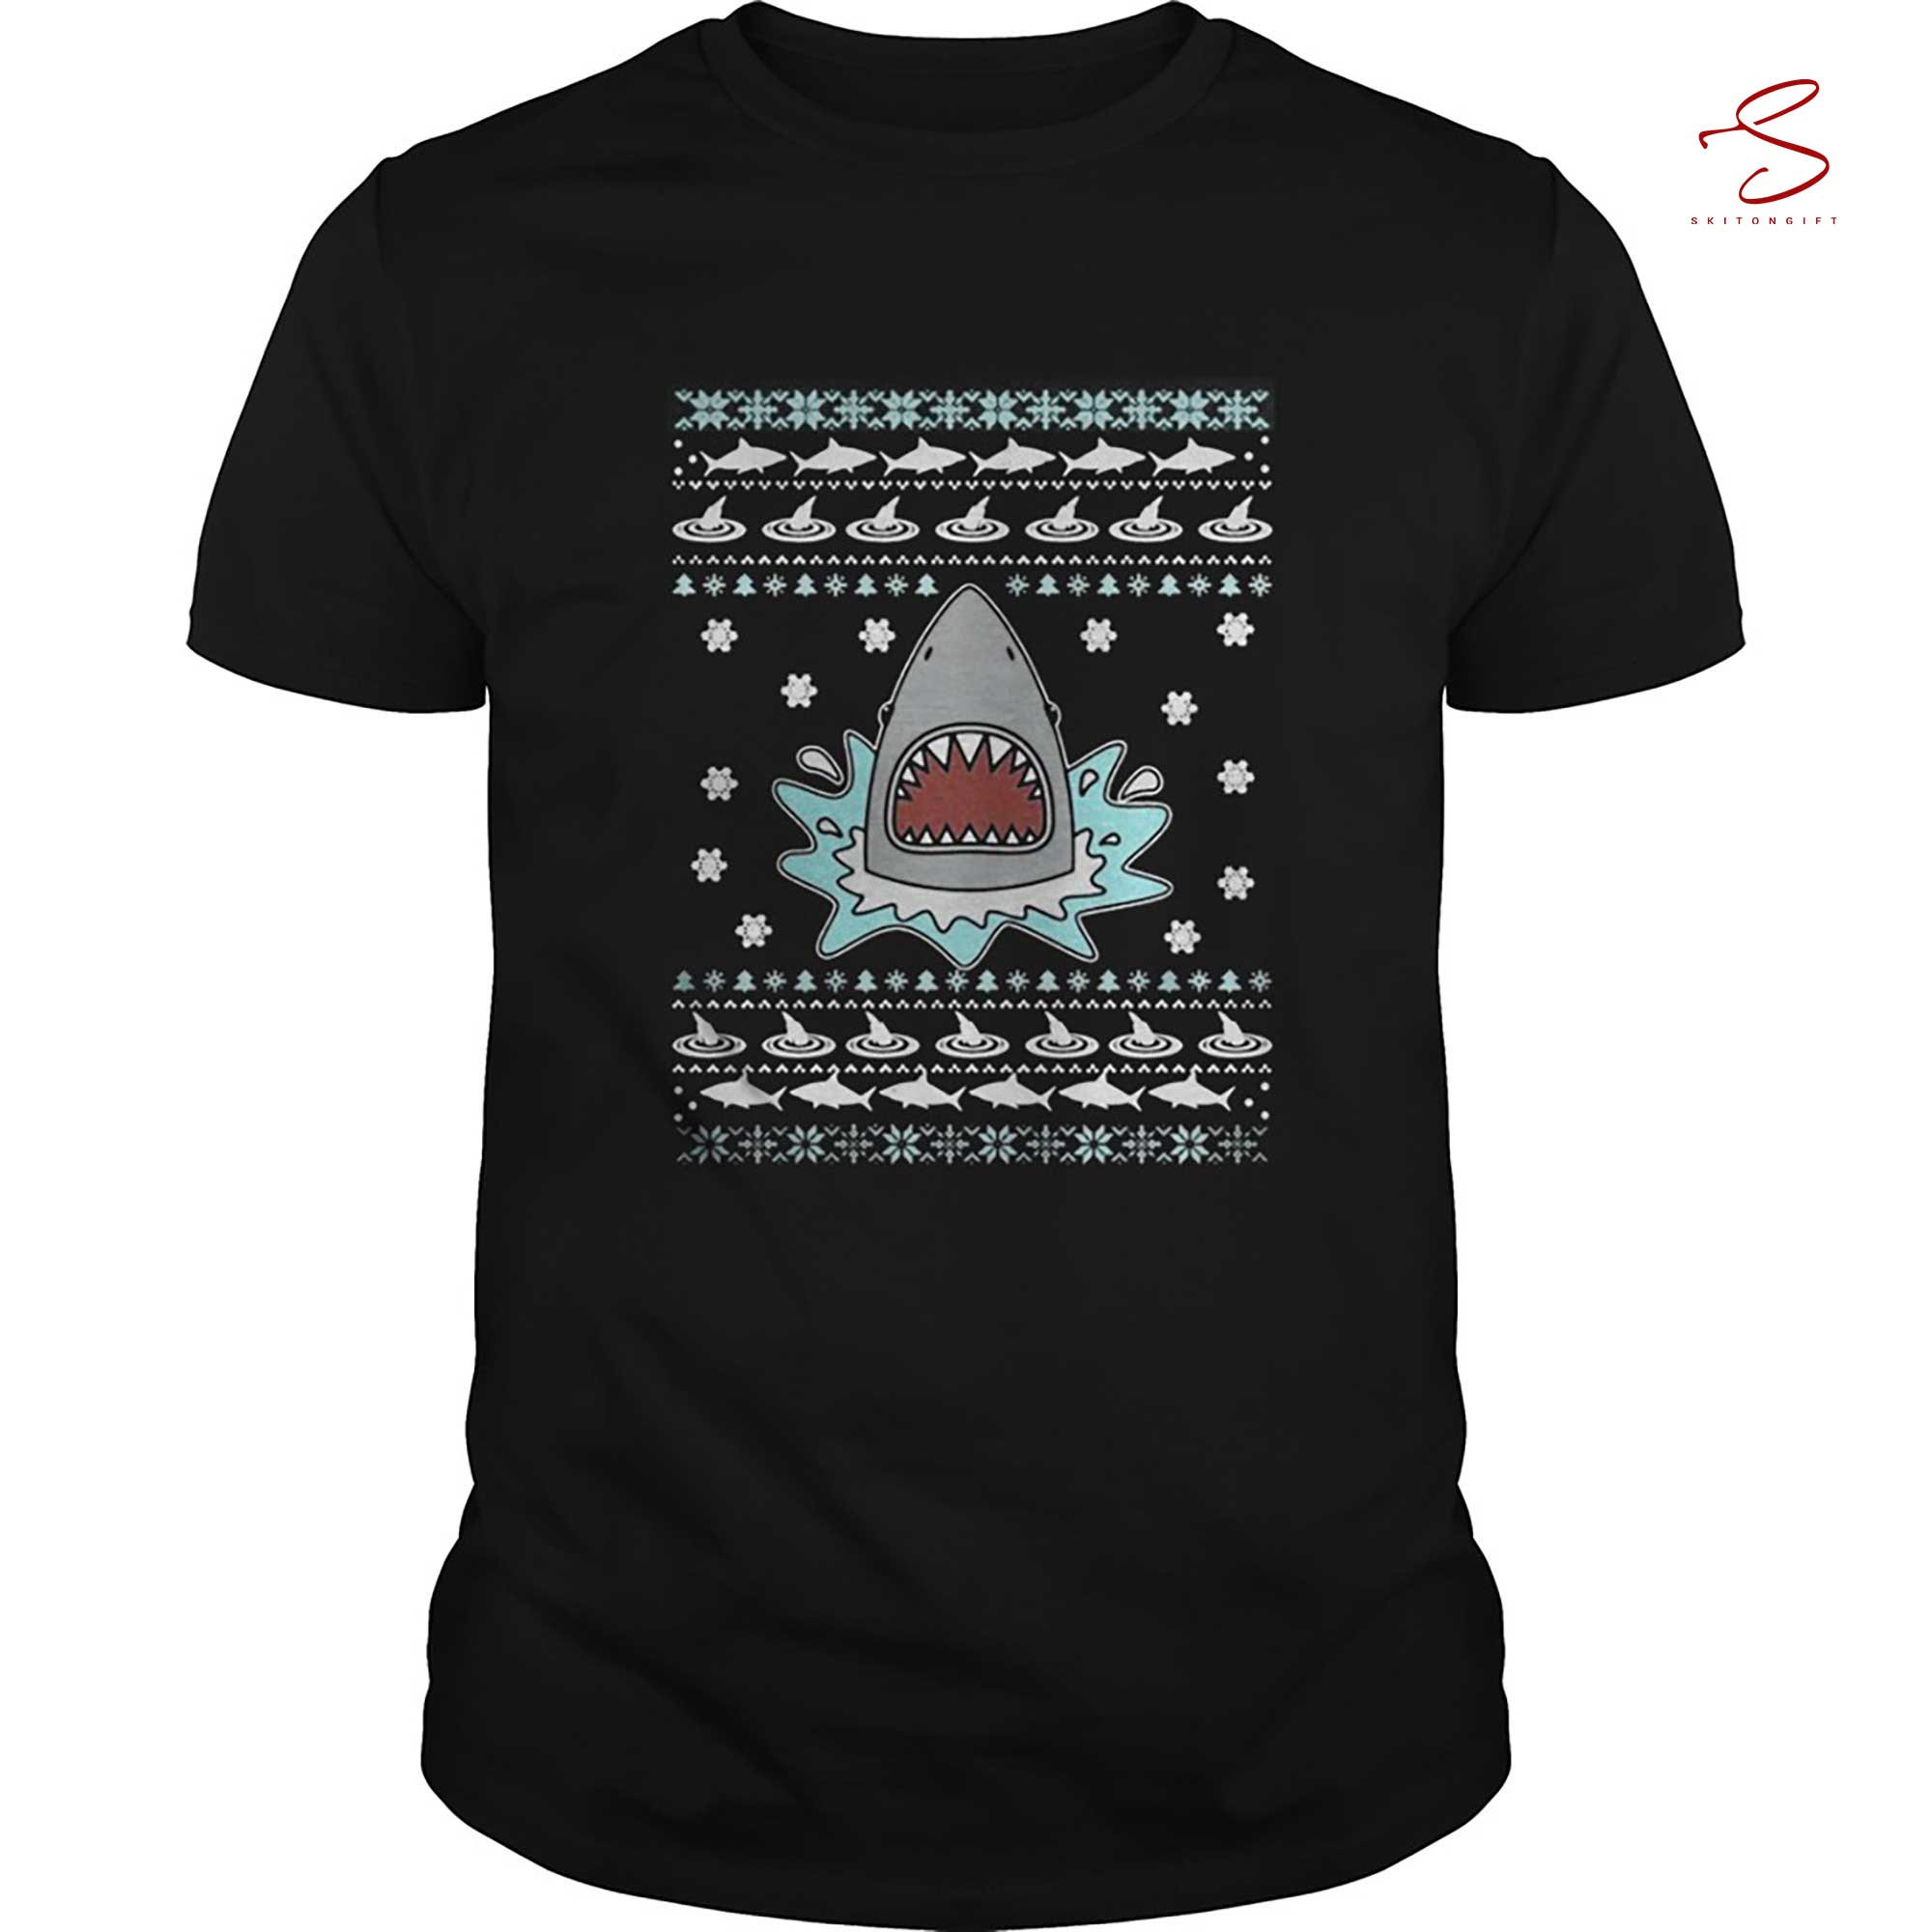 Skitongift Shark Christmas Sweatshir